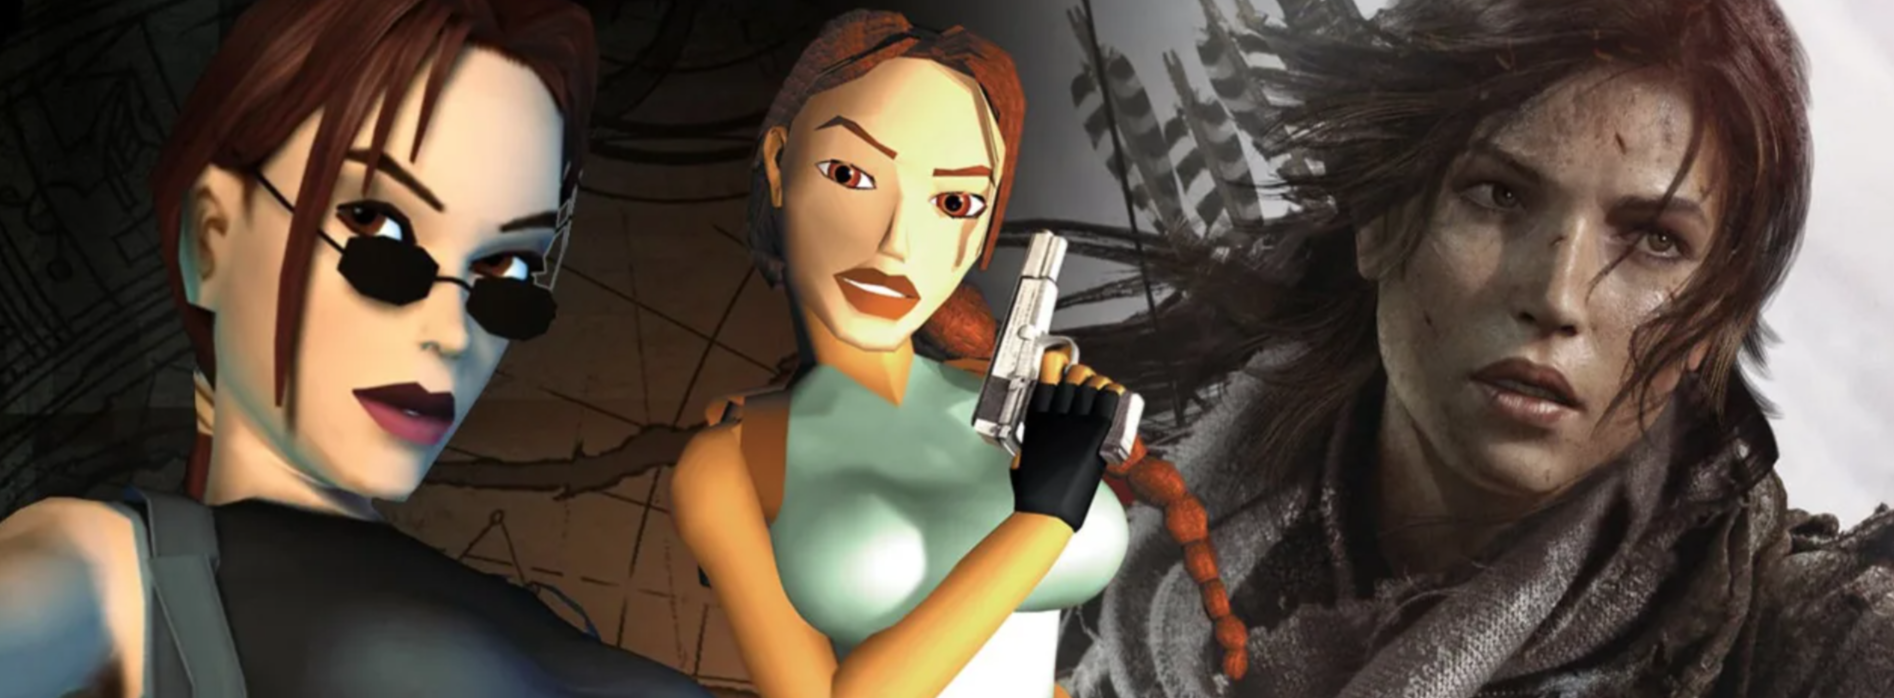 Lara Croft supera a Mario Bros. en los BAFTA Games Awards como personaje más icónico